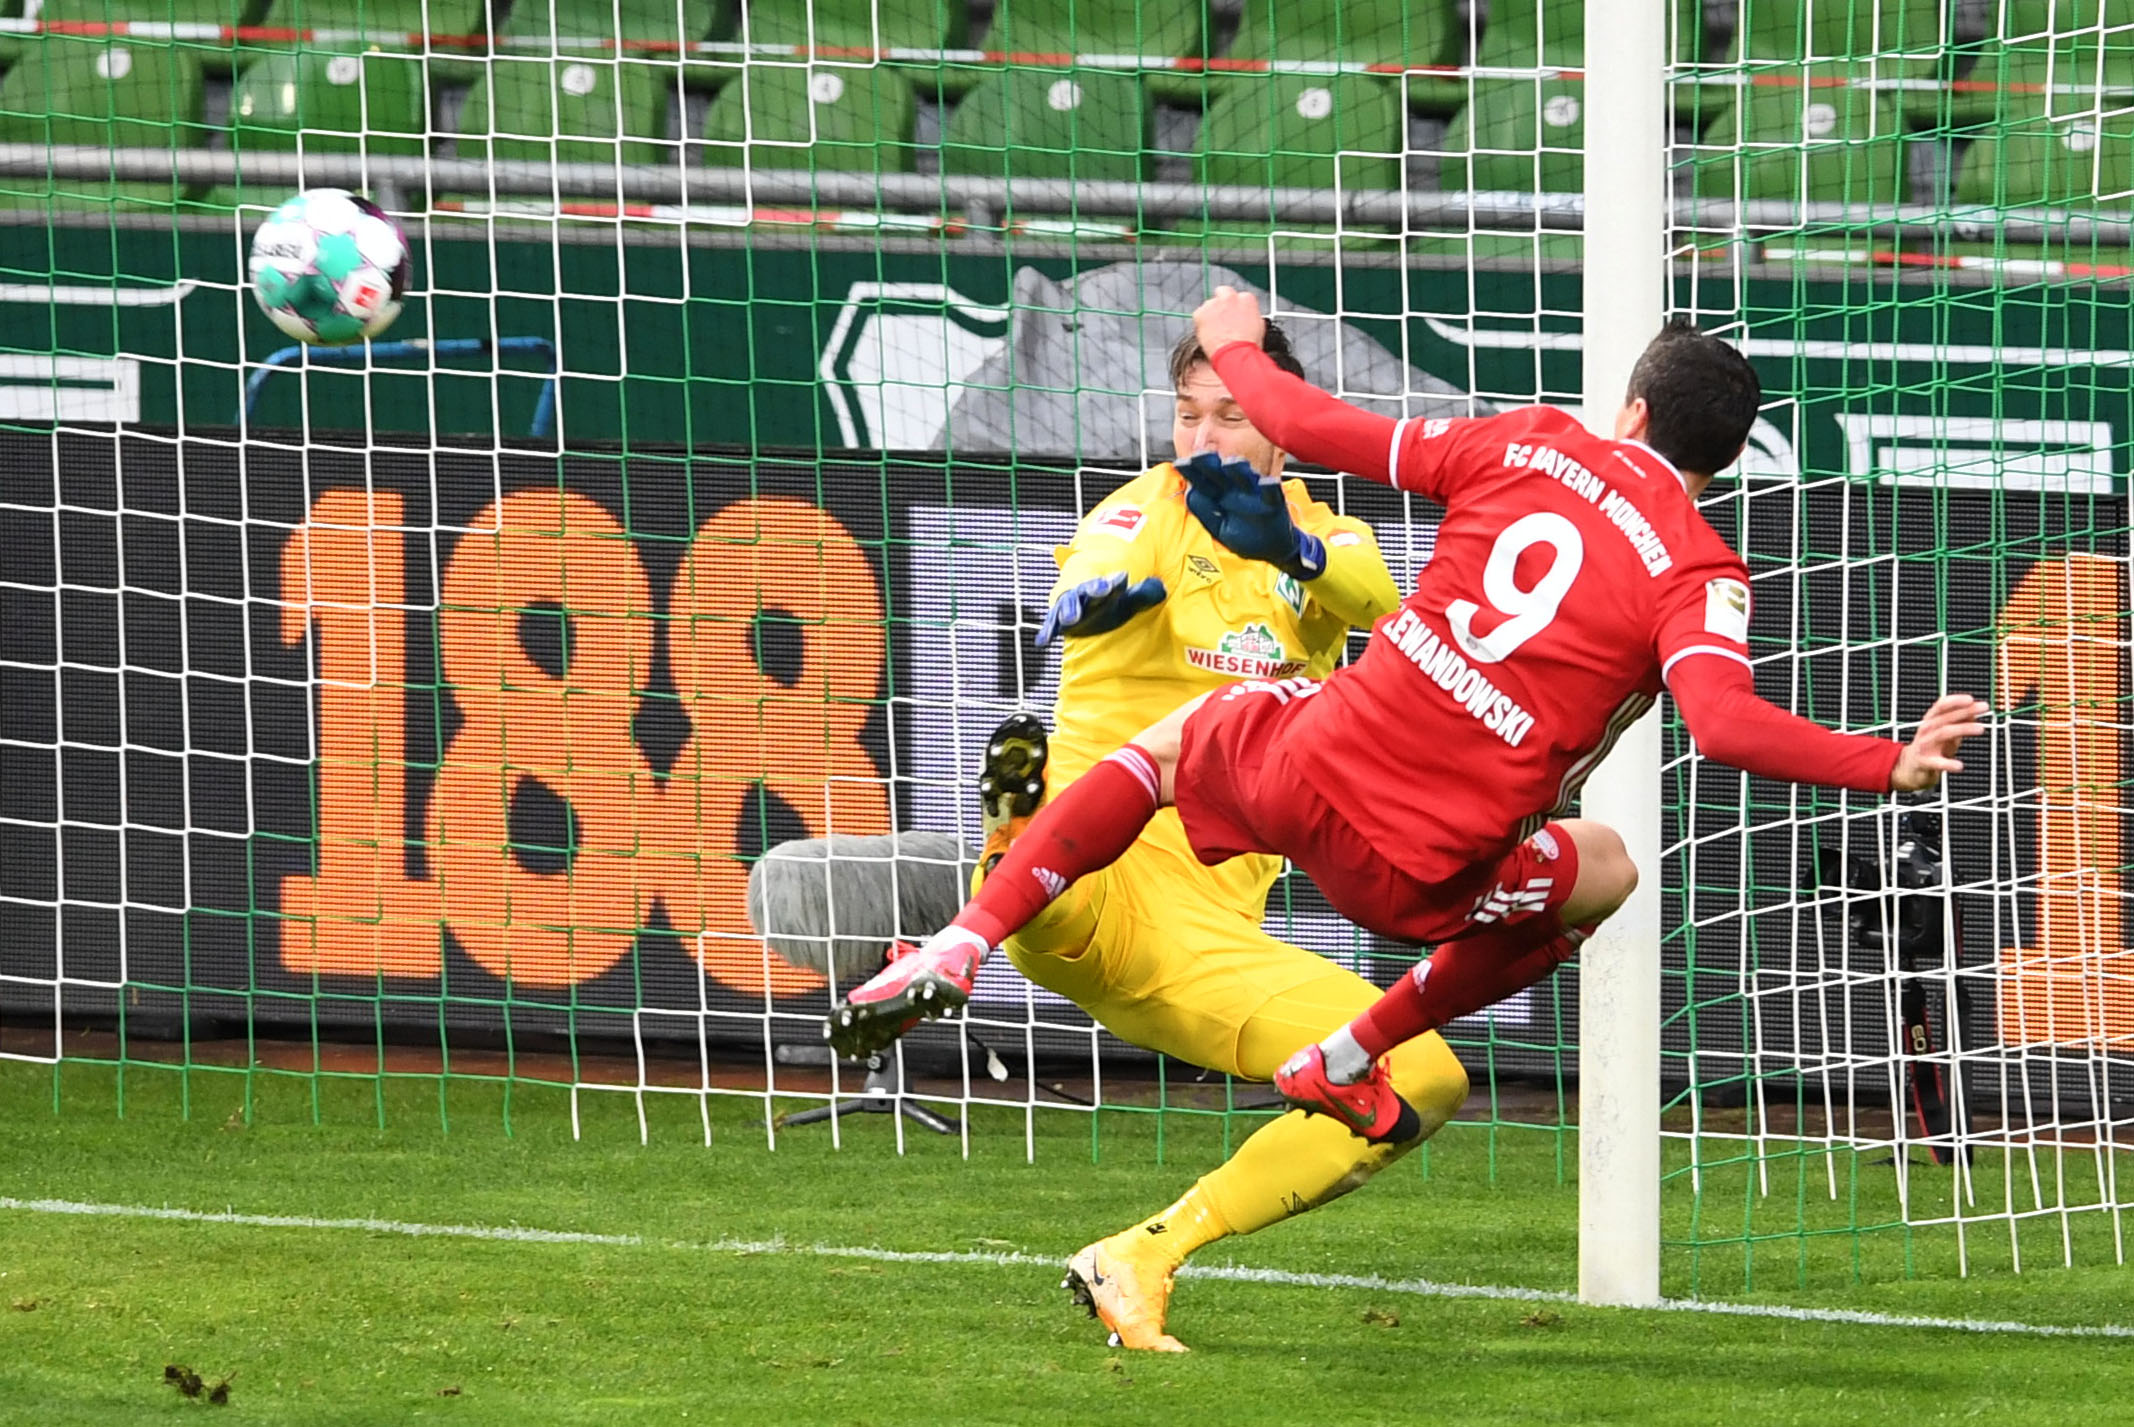 Robert Lewandowski en el momento que anota el 0-3 contra el  Bremen. (Foto Prensa Libre: AFP).

